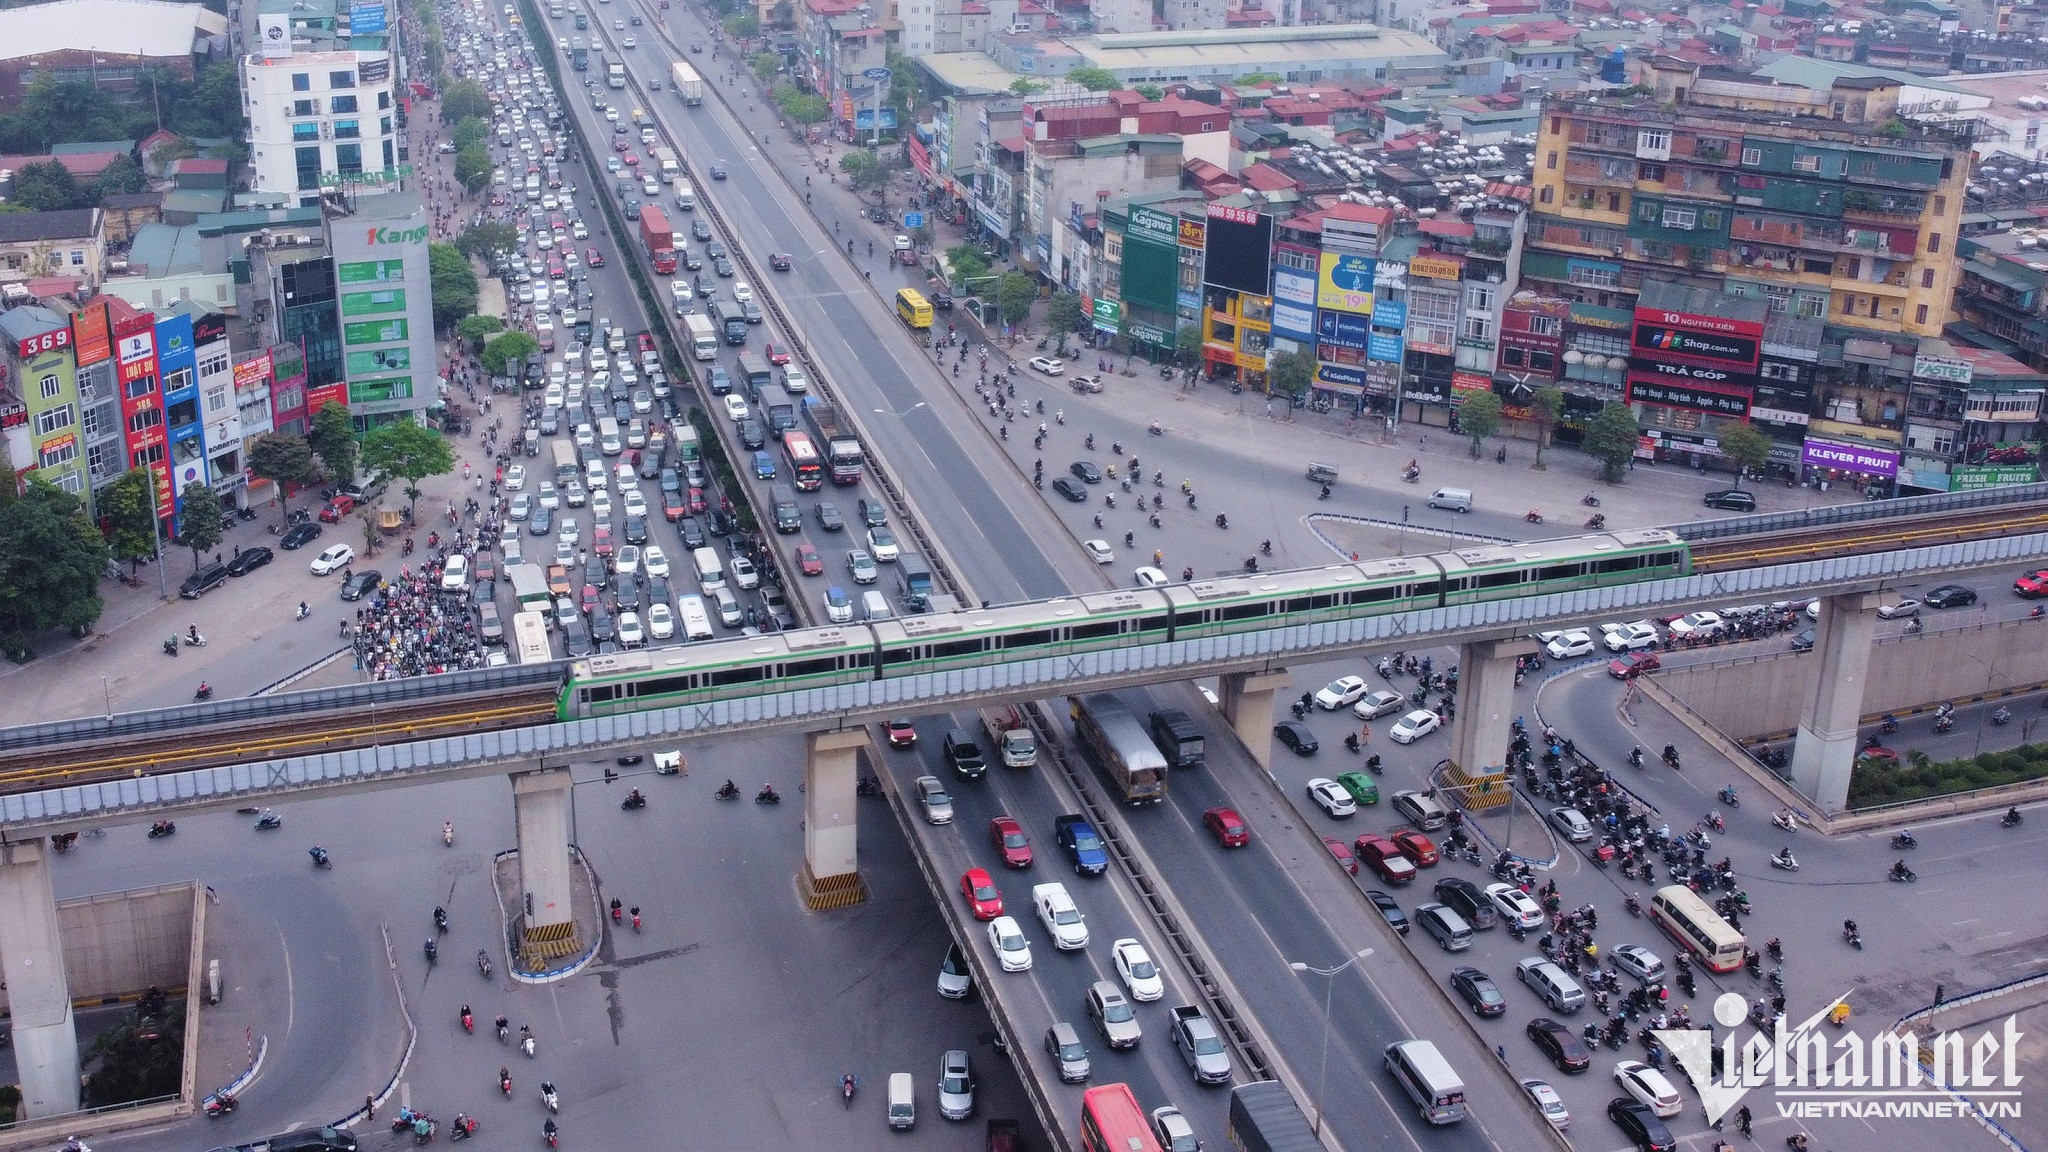 Qua khảo sát, Hanoi Metro cho biết, có 84% hành khách chọn đường sắt đô thị vì tránh được tắc đường, di chuyển nhanh, giảm ô nhiễm môi trường, hiện đại, an toàn, thuận tiện… Chỉ 16% lựa chọn đường sắt đô thị vì tuyến đường phù hợp hoặc có nhiều thời gian rảnh rỗi hơn.